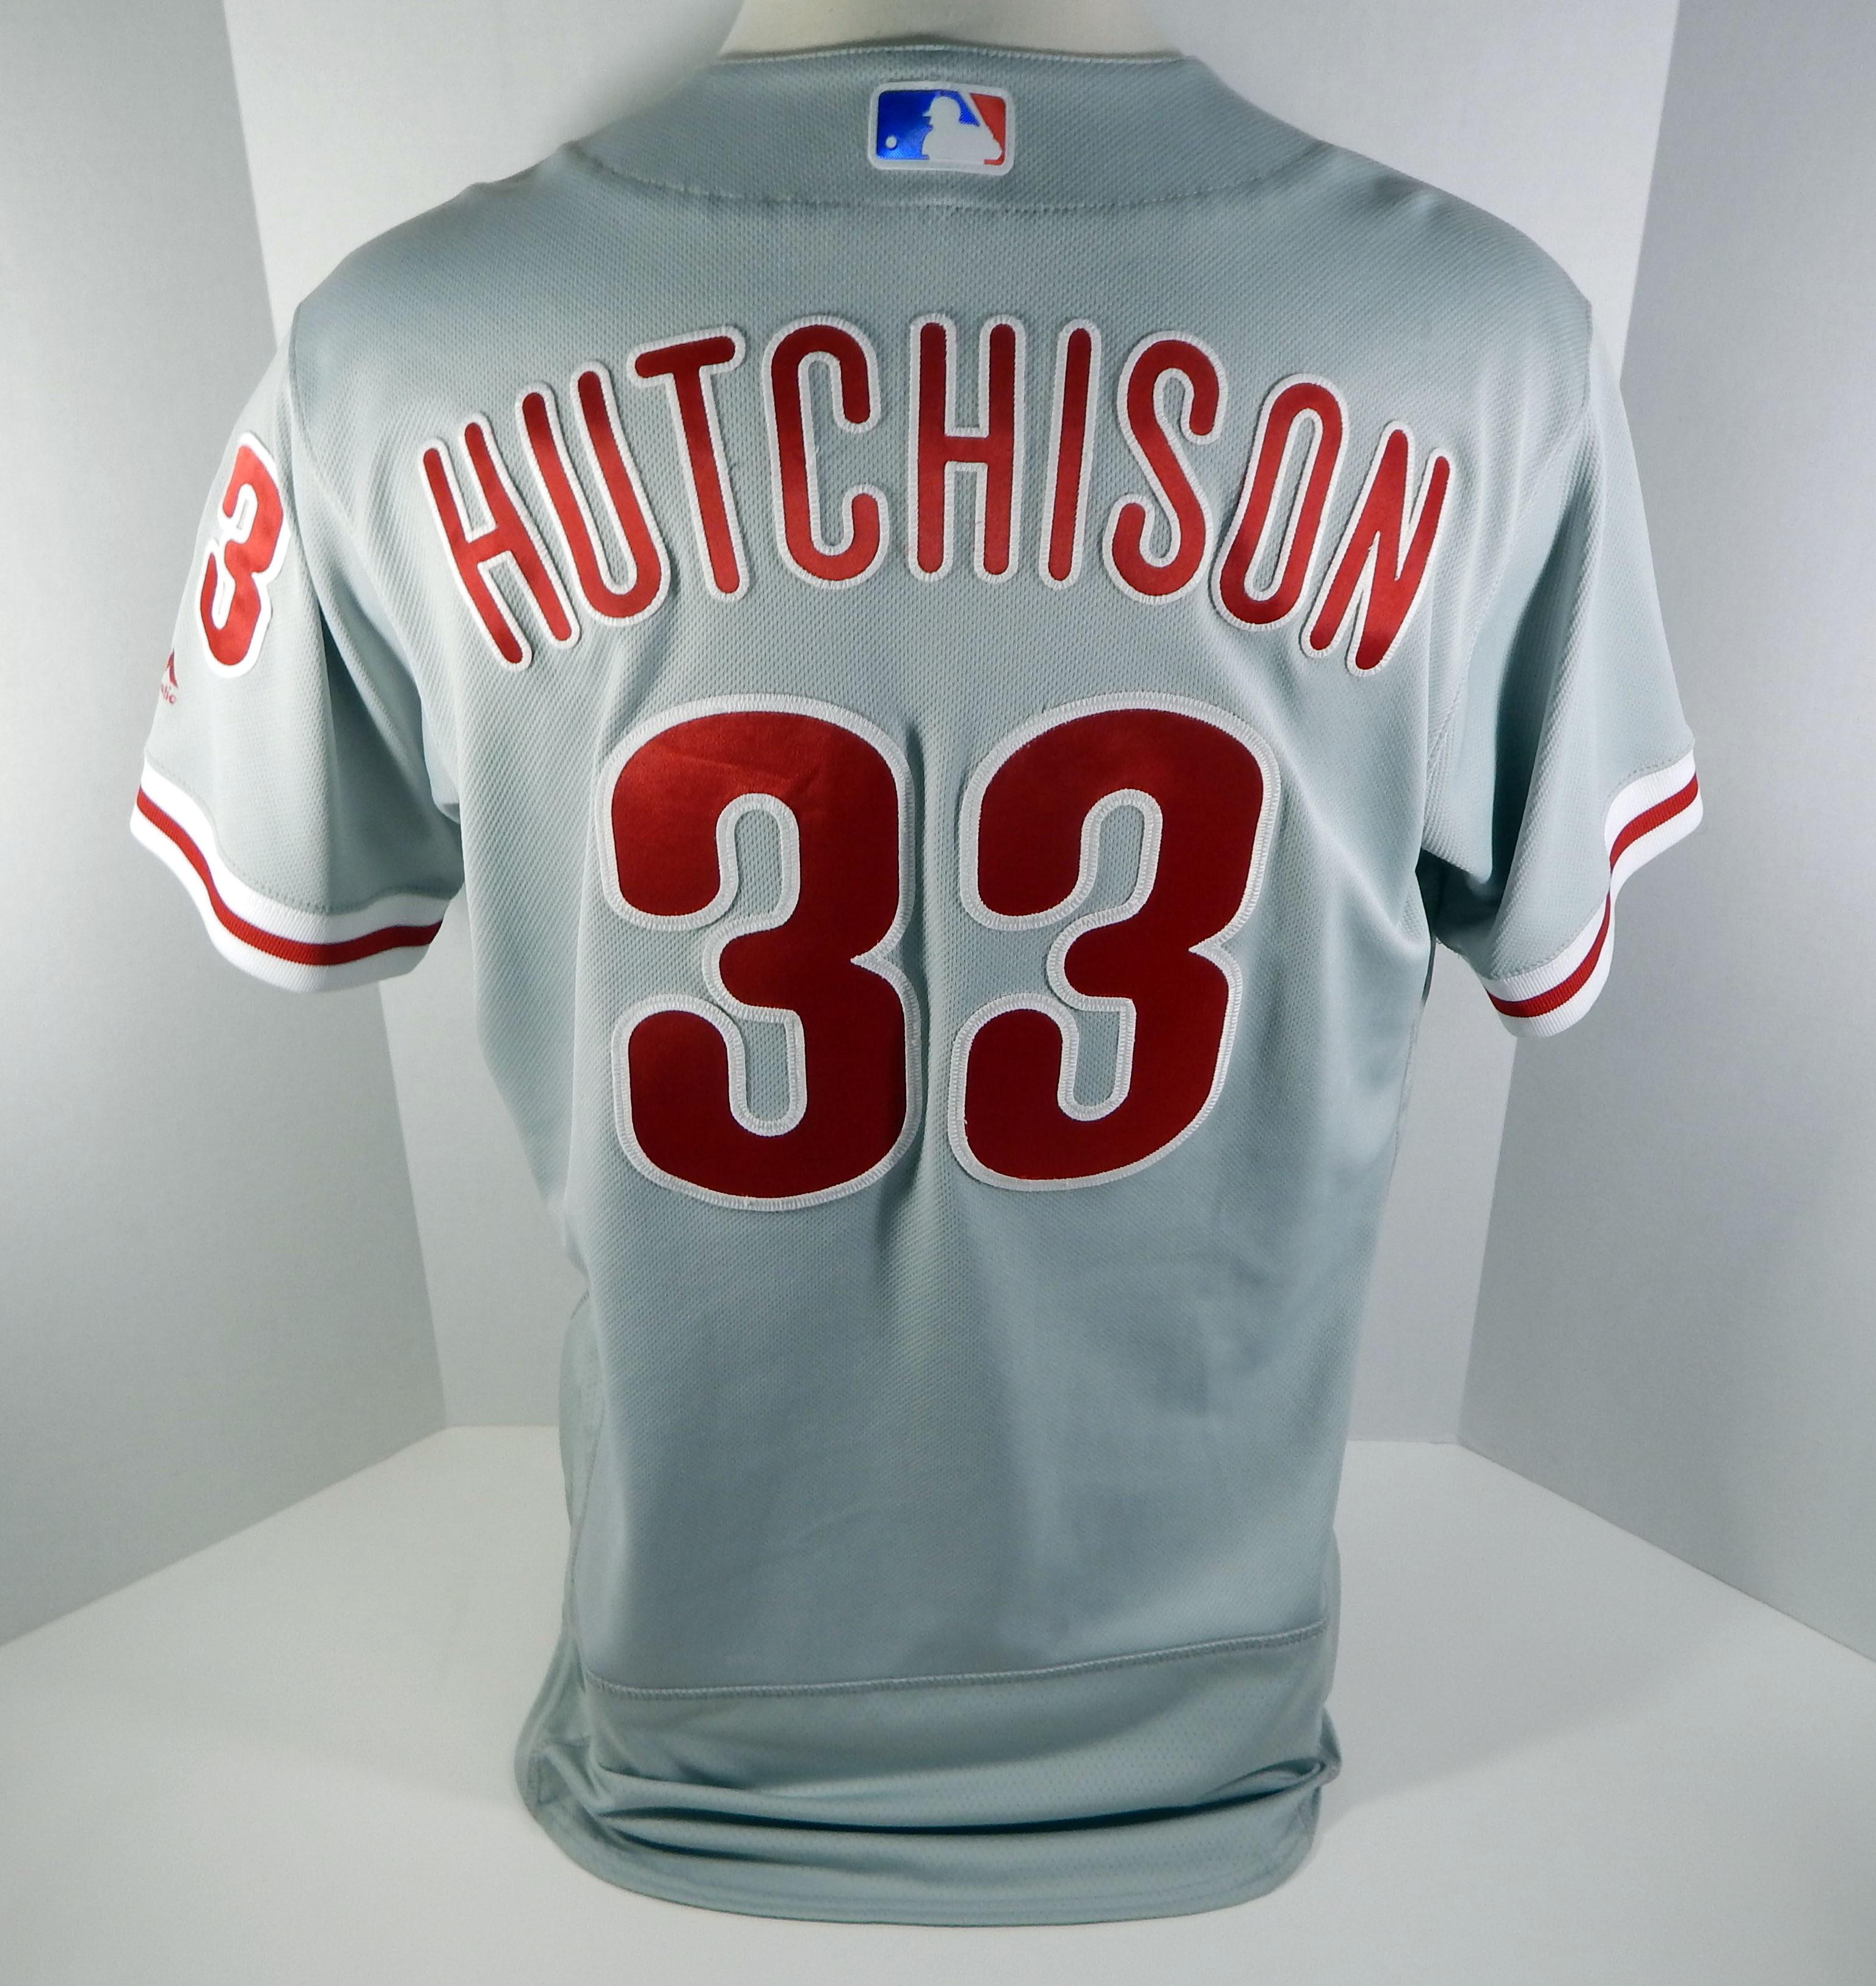 drew hutchison jersey